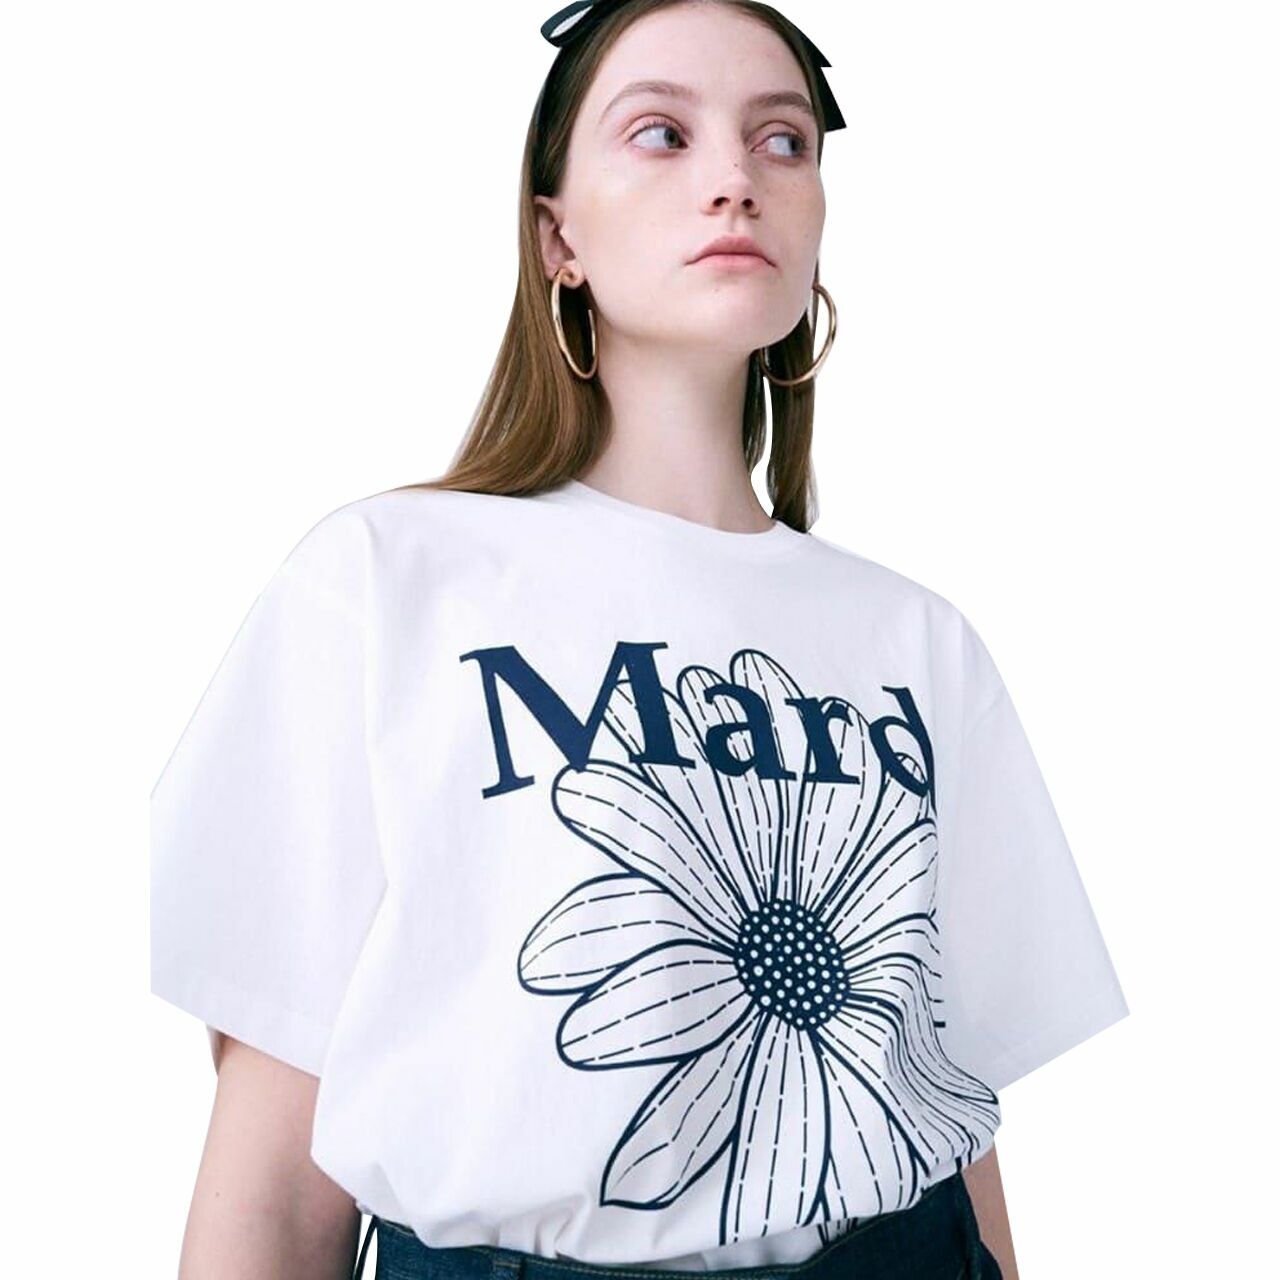 Mardi Mercredi Tshirt in White & Navy Dark